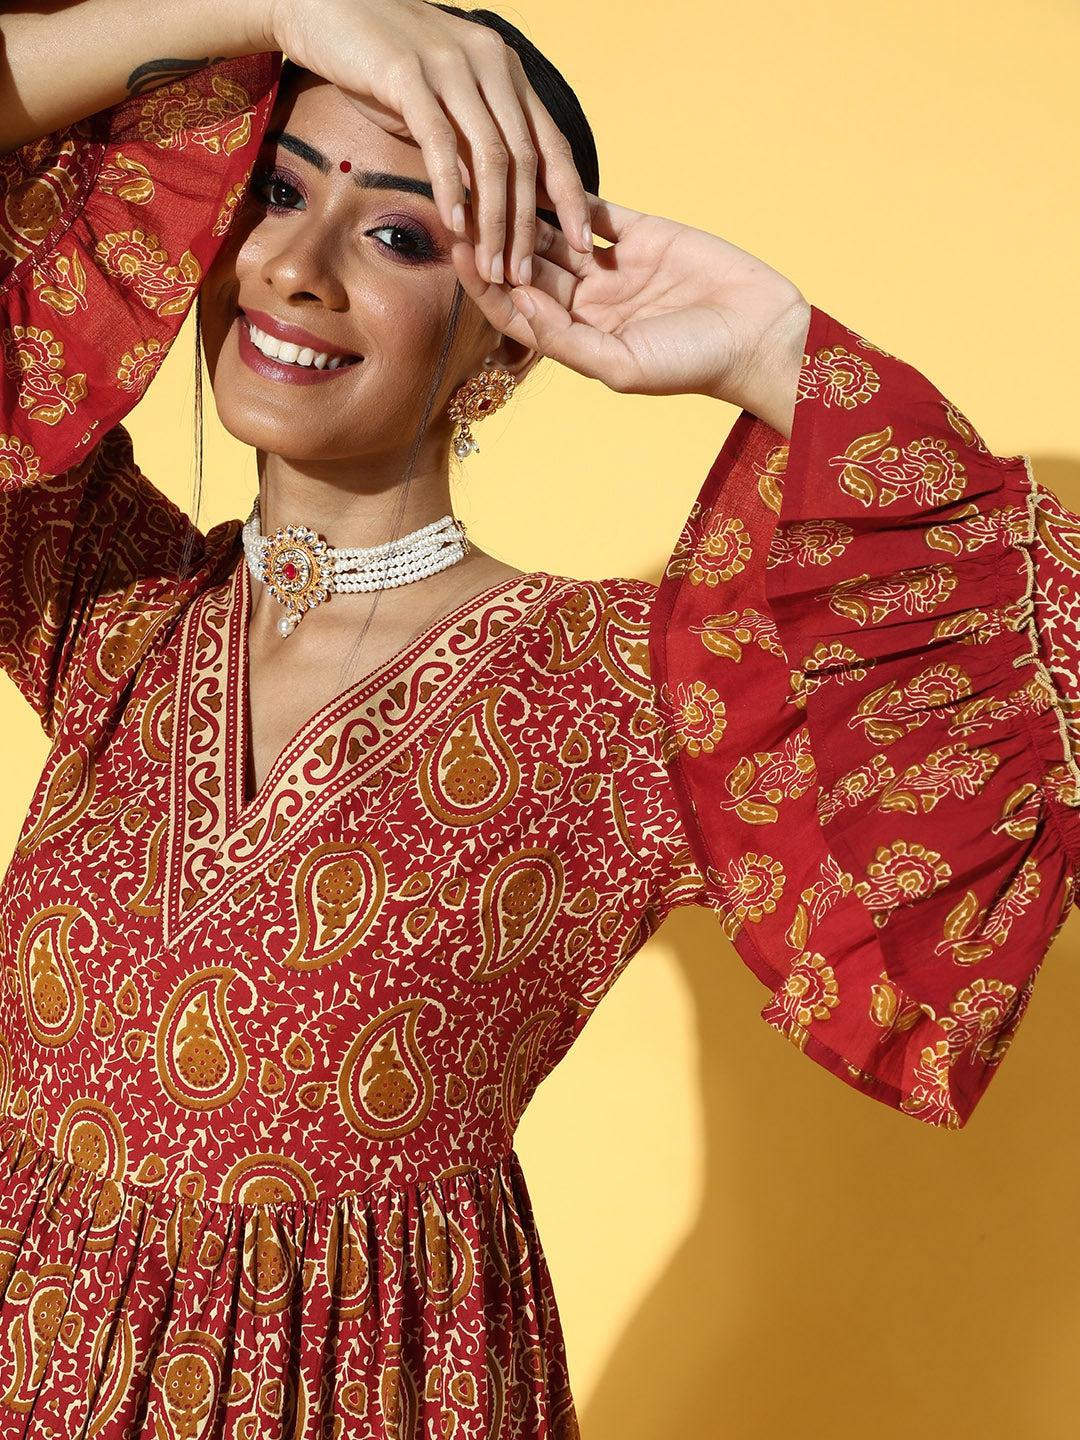 red-printed-kurta-set-10102109RD, Women Indian Ethnic Clothing, Cotton Kurta Set